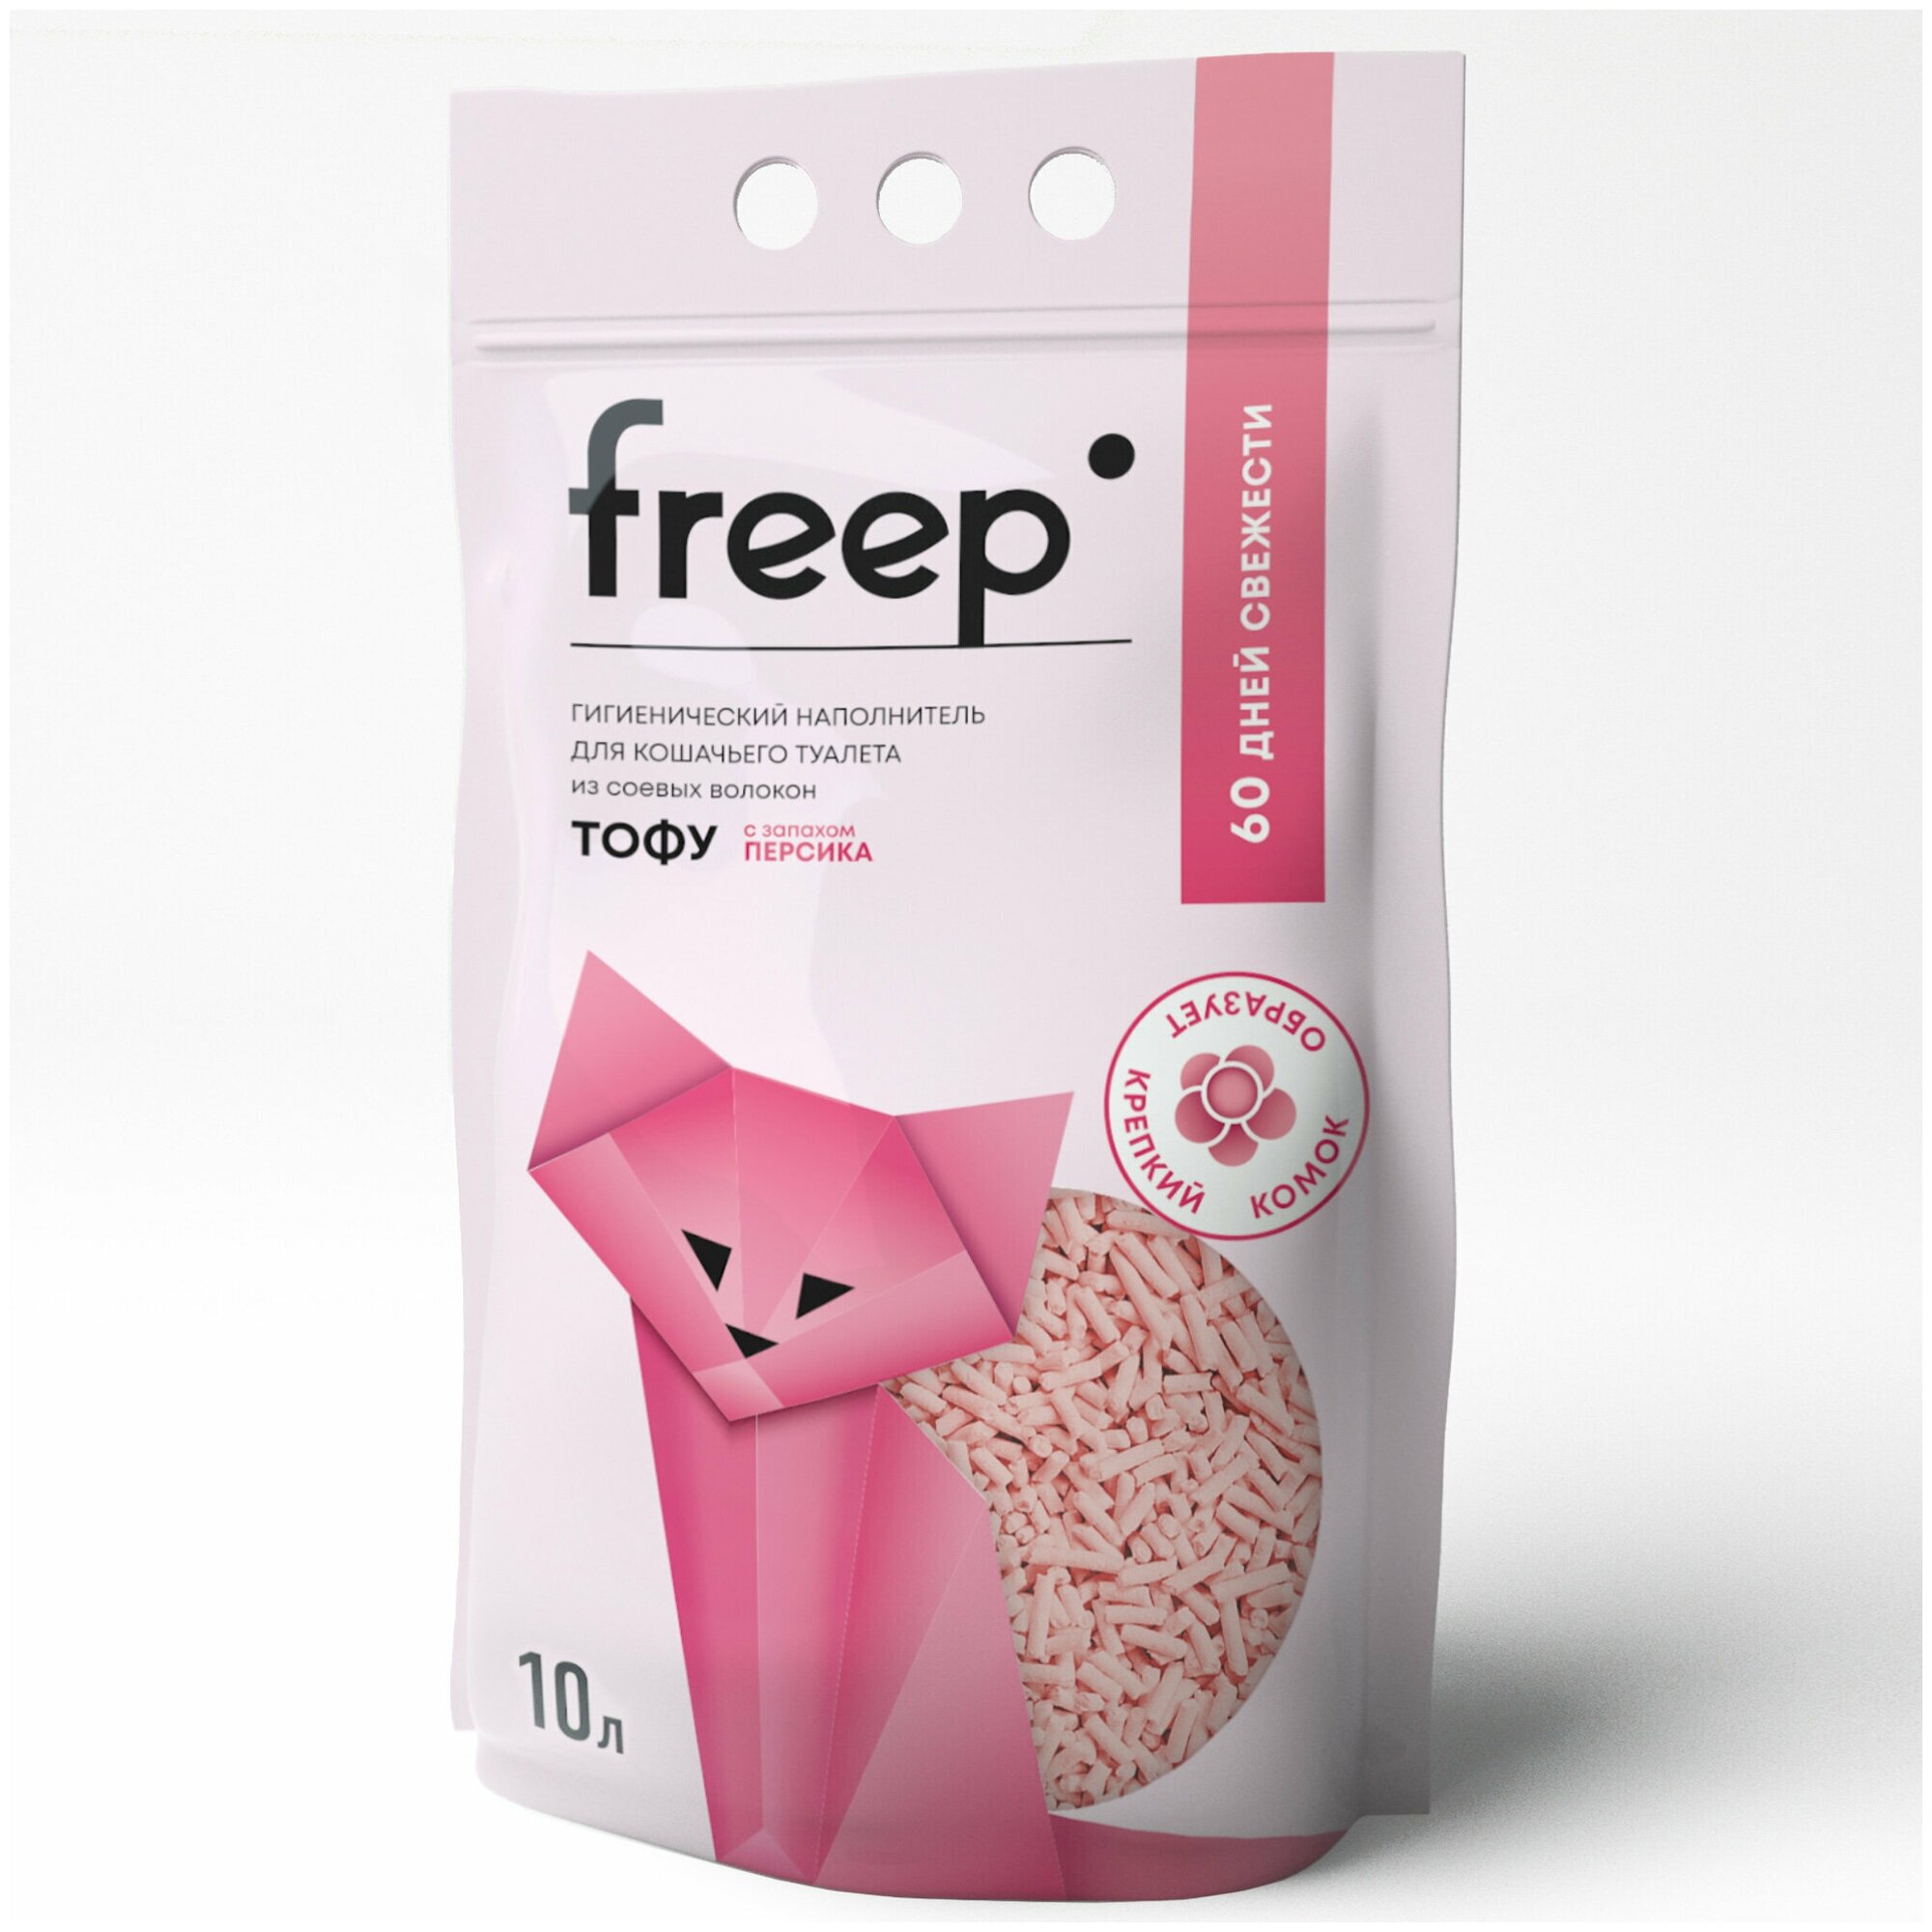 Freep Наполнитель для кошачьего туалета тофу 10 л Персик